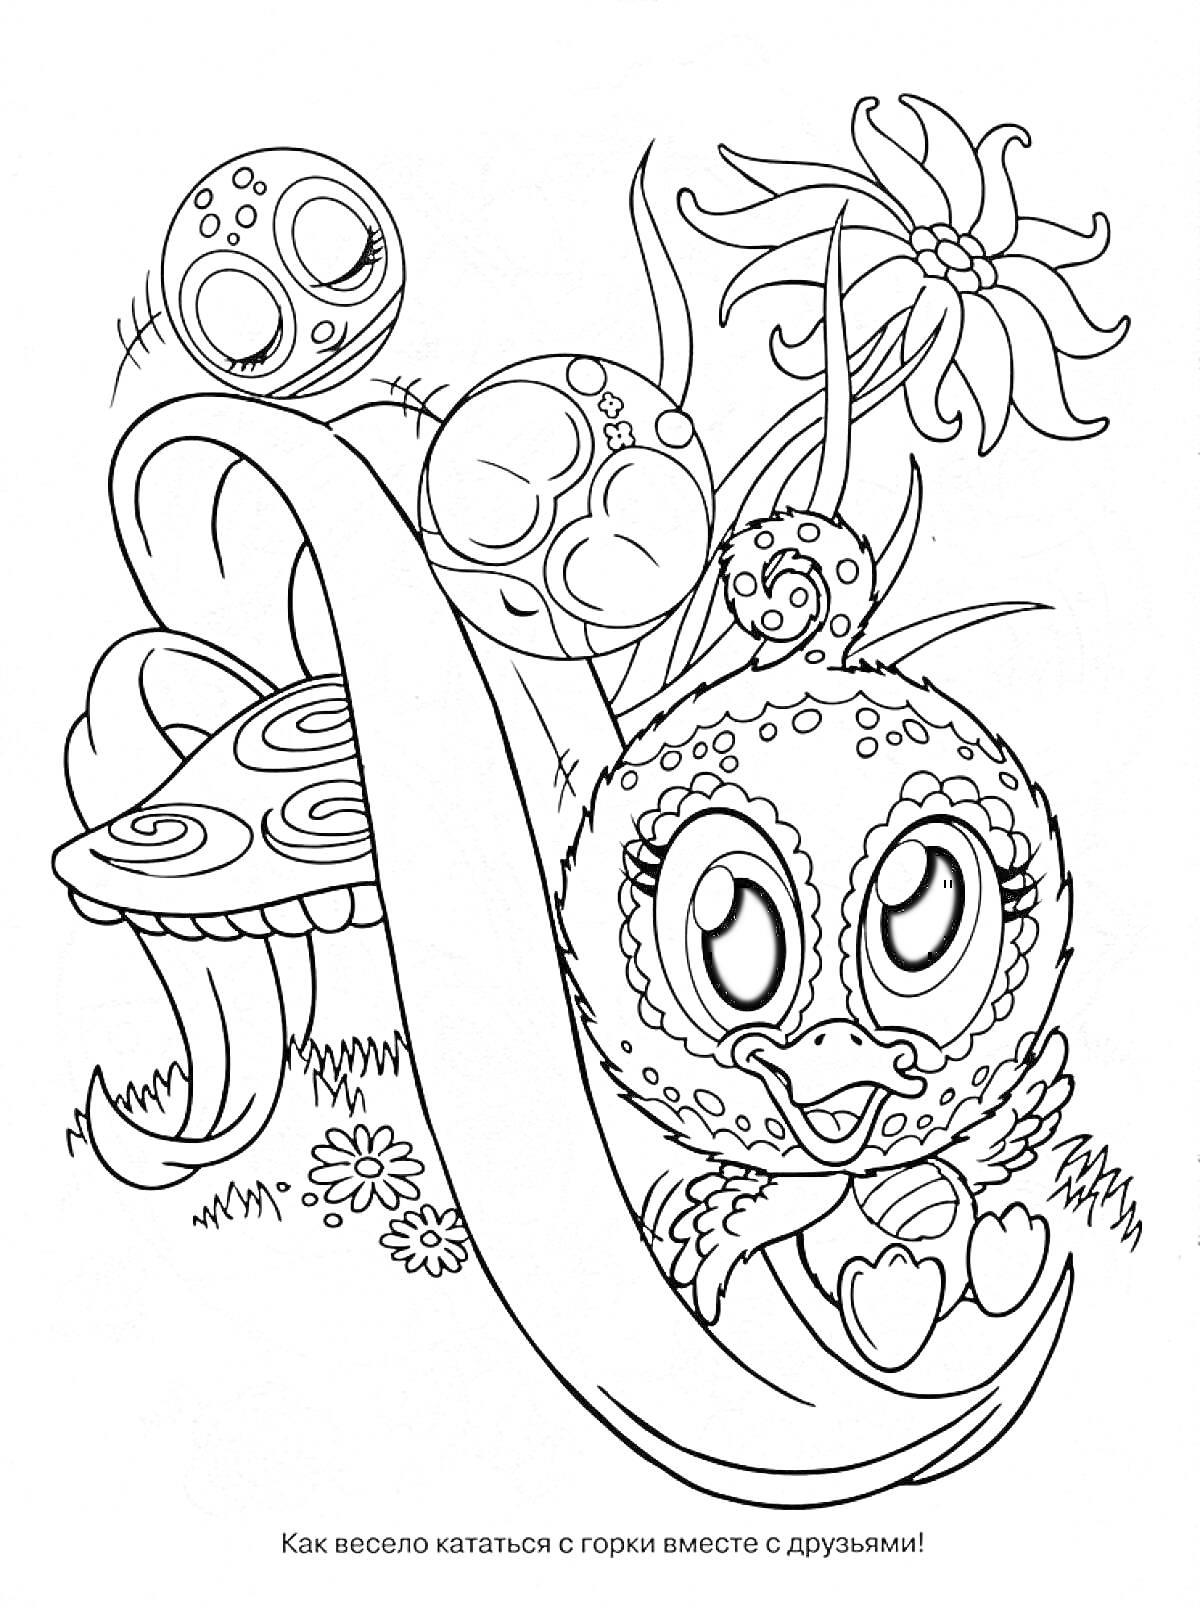 Зублс, катание с горки, в окружении друзья, цветы и грибы